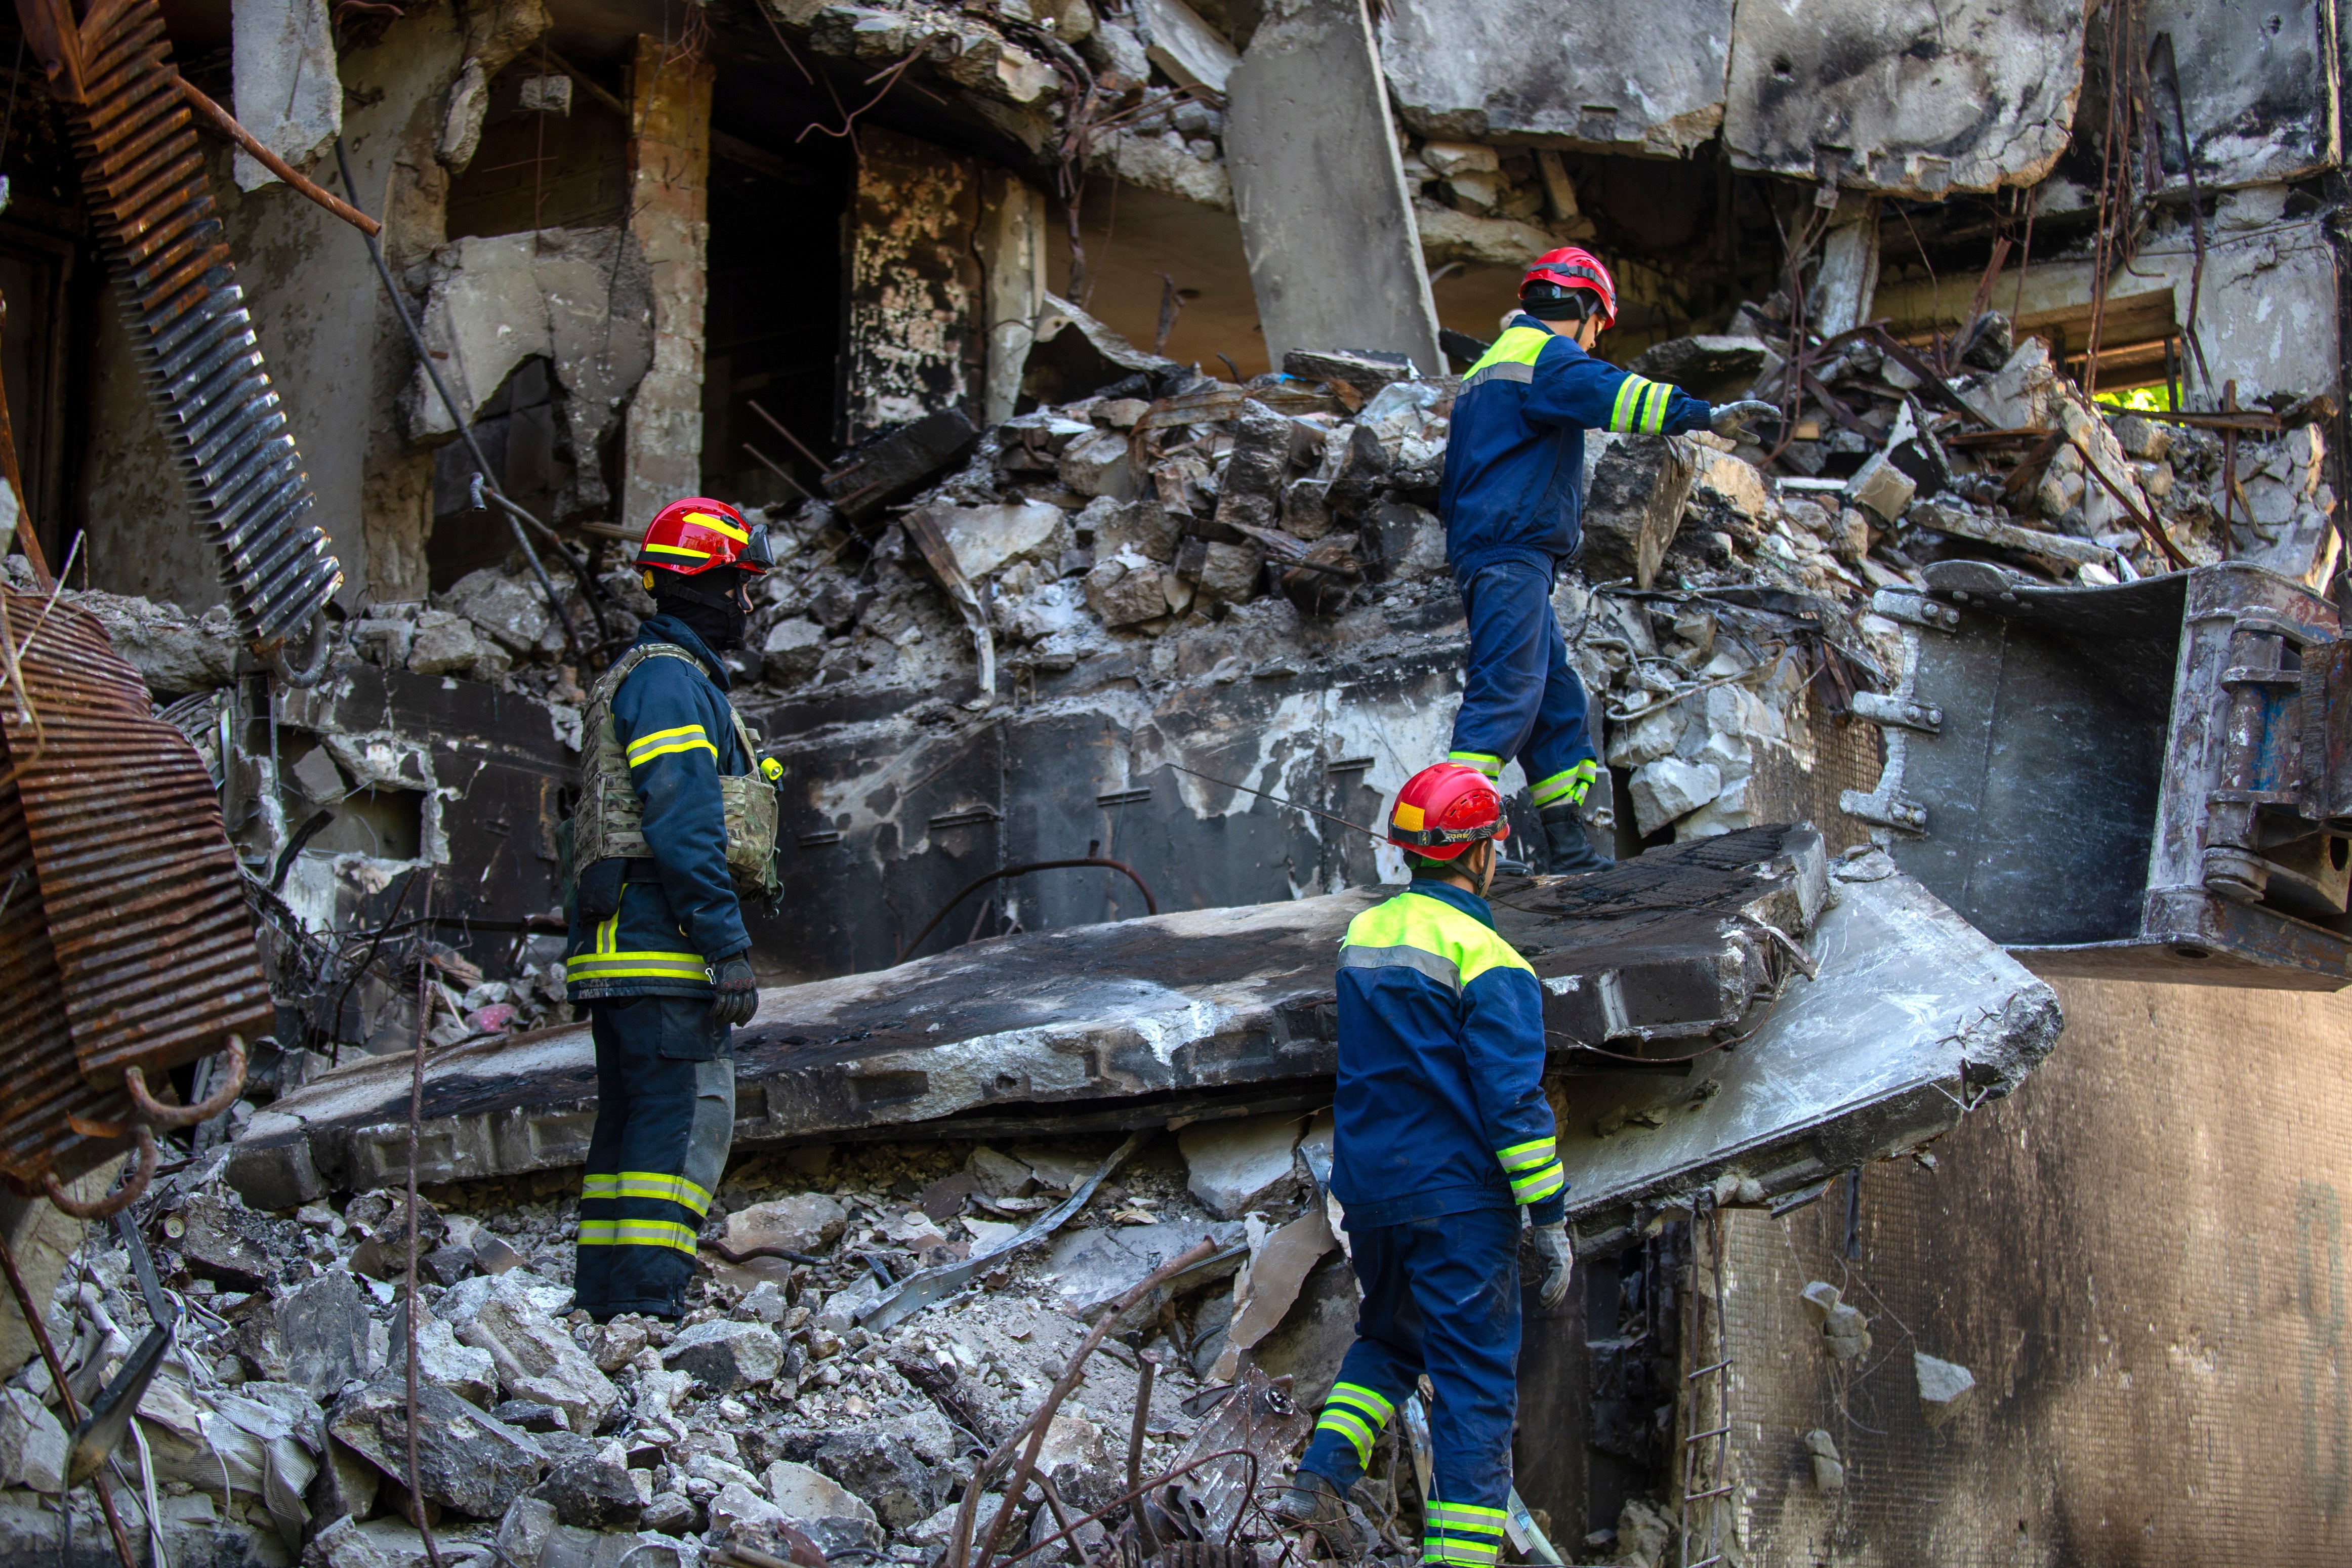 Ukrainian emergency service personnel work outside a damaged building following shelling in Kharkiv